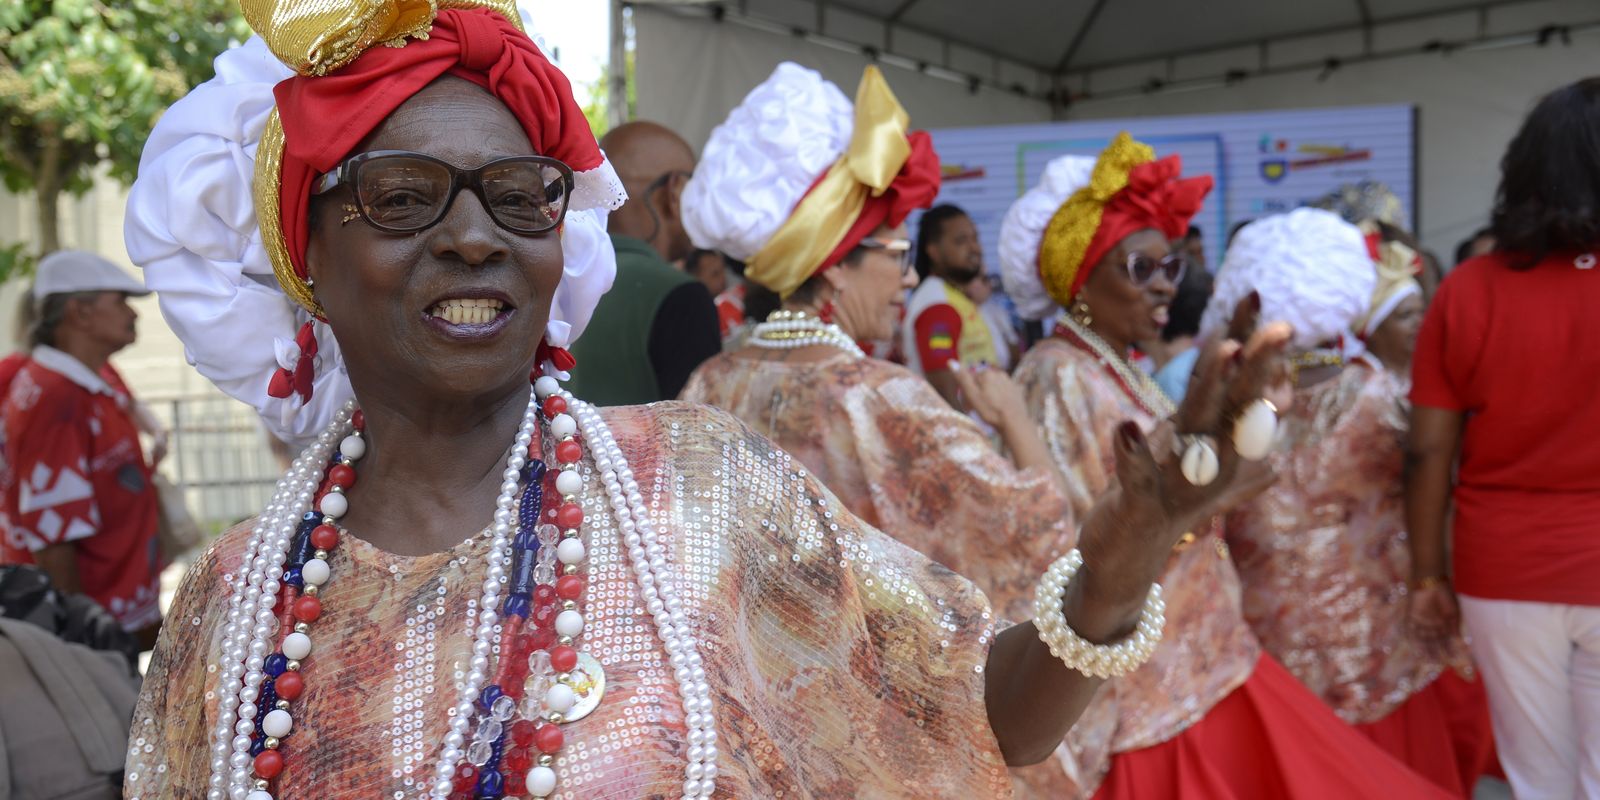 Nova Intendente reabre carnaval no Rio de Janeiro